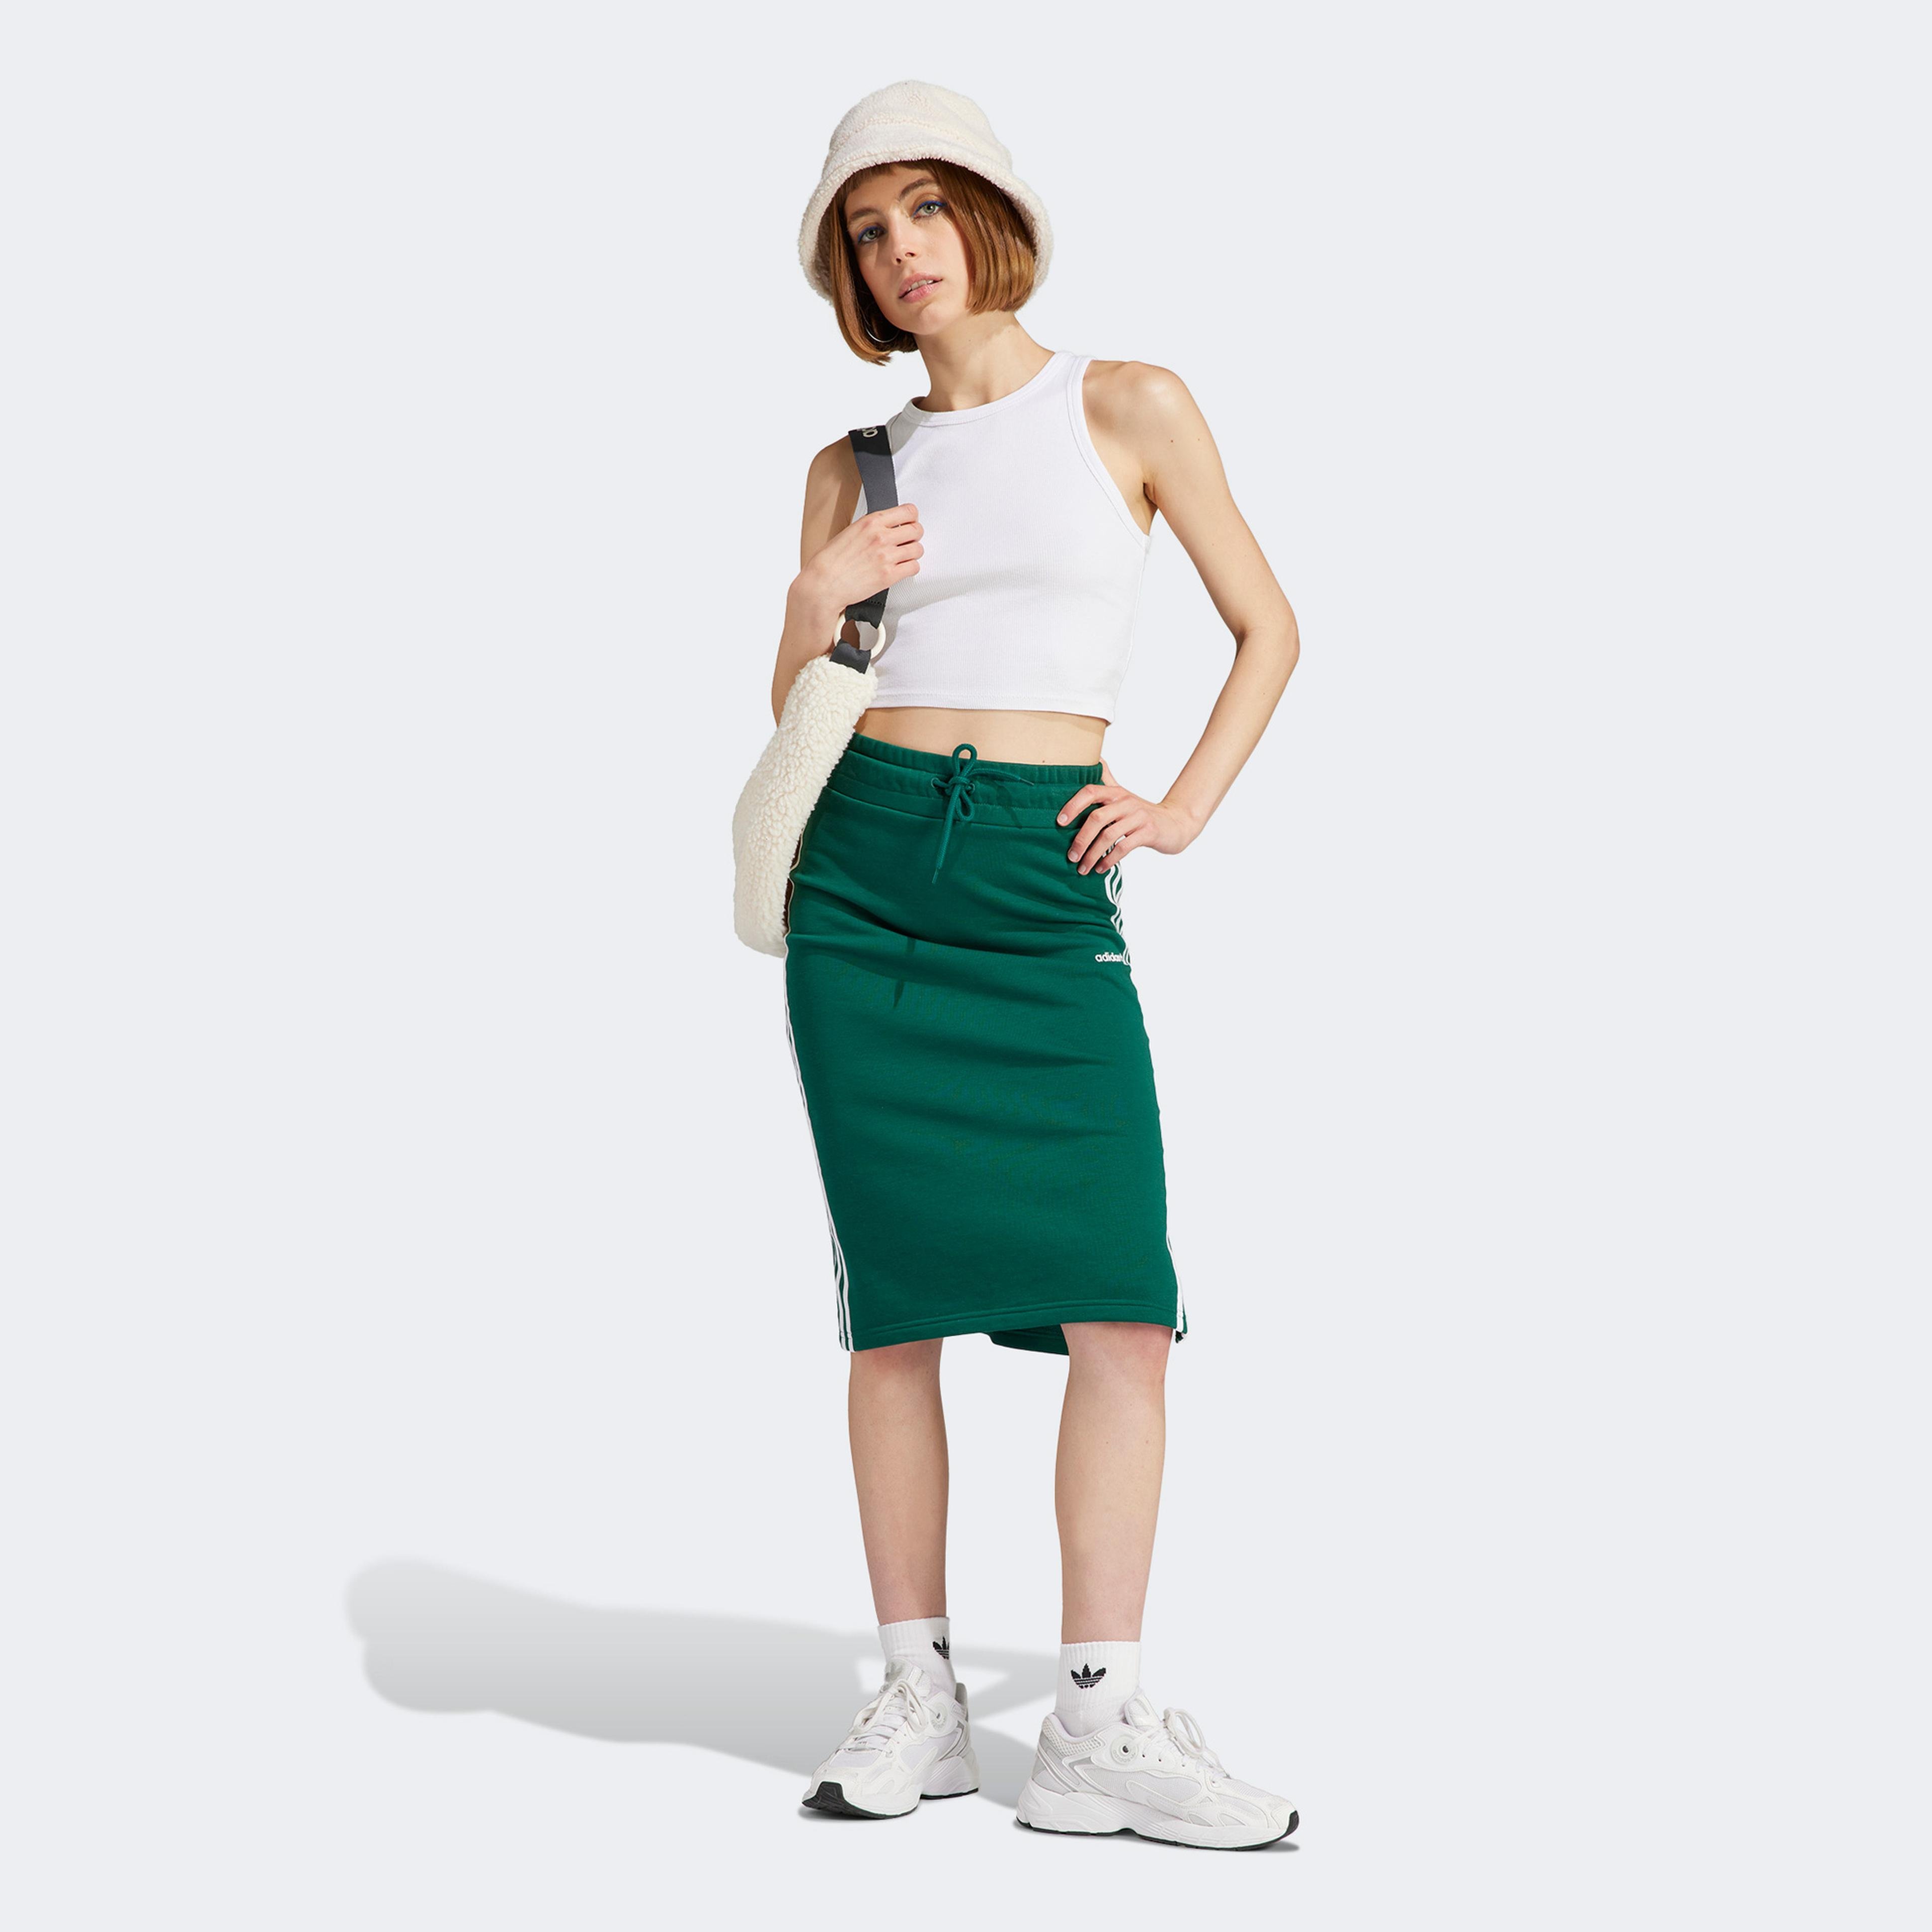 adidas 3S Originals Kadın Yeşil Etek